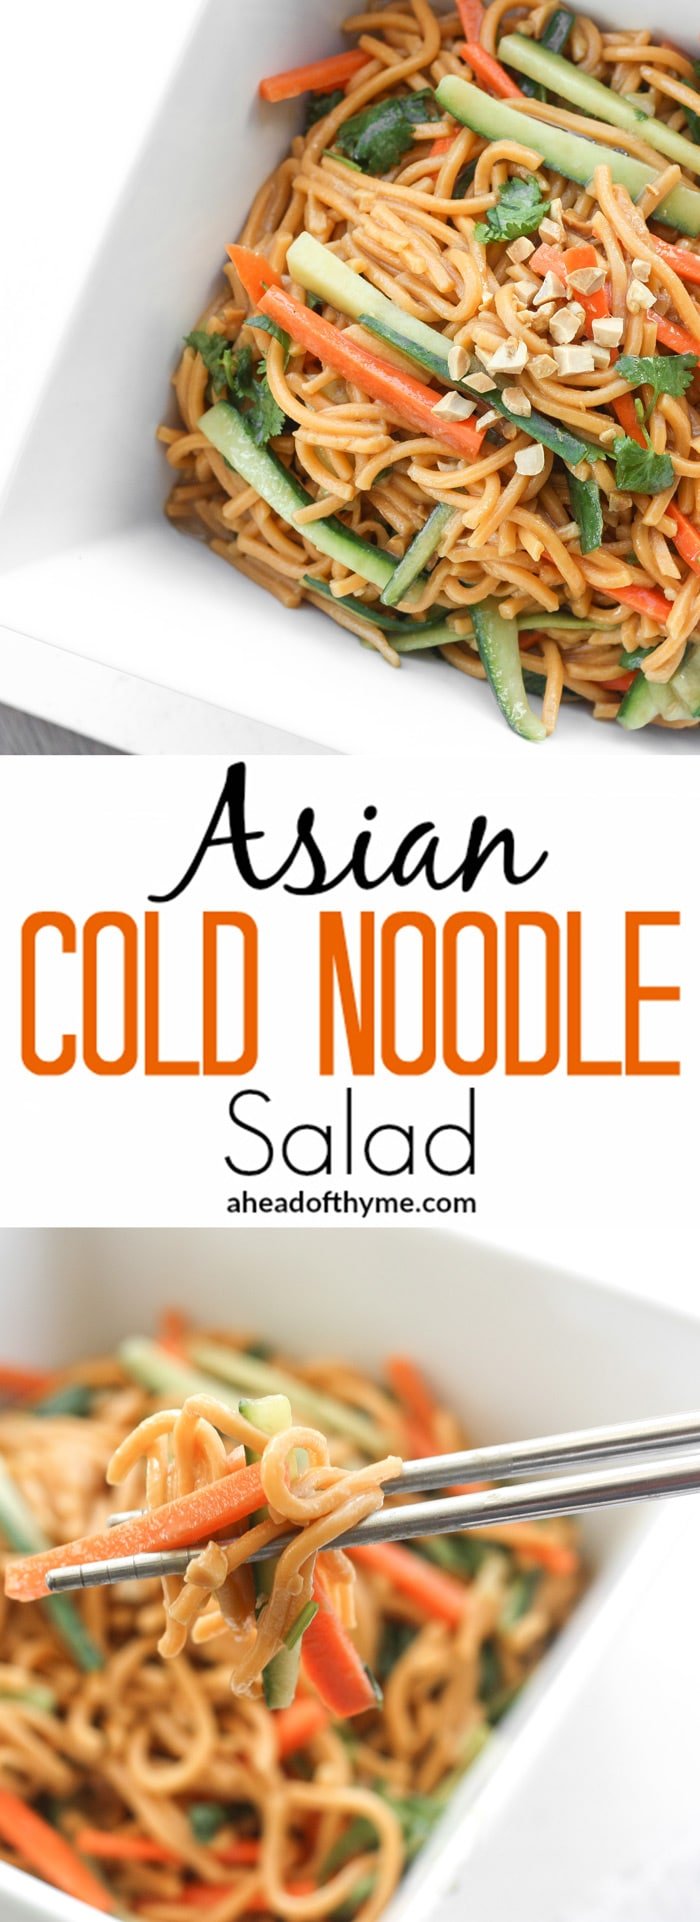 Asian Cold Noodle Salad